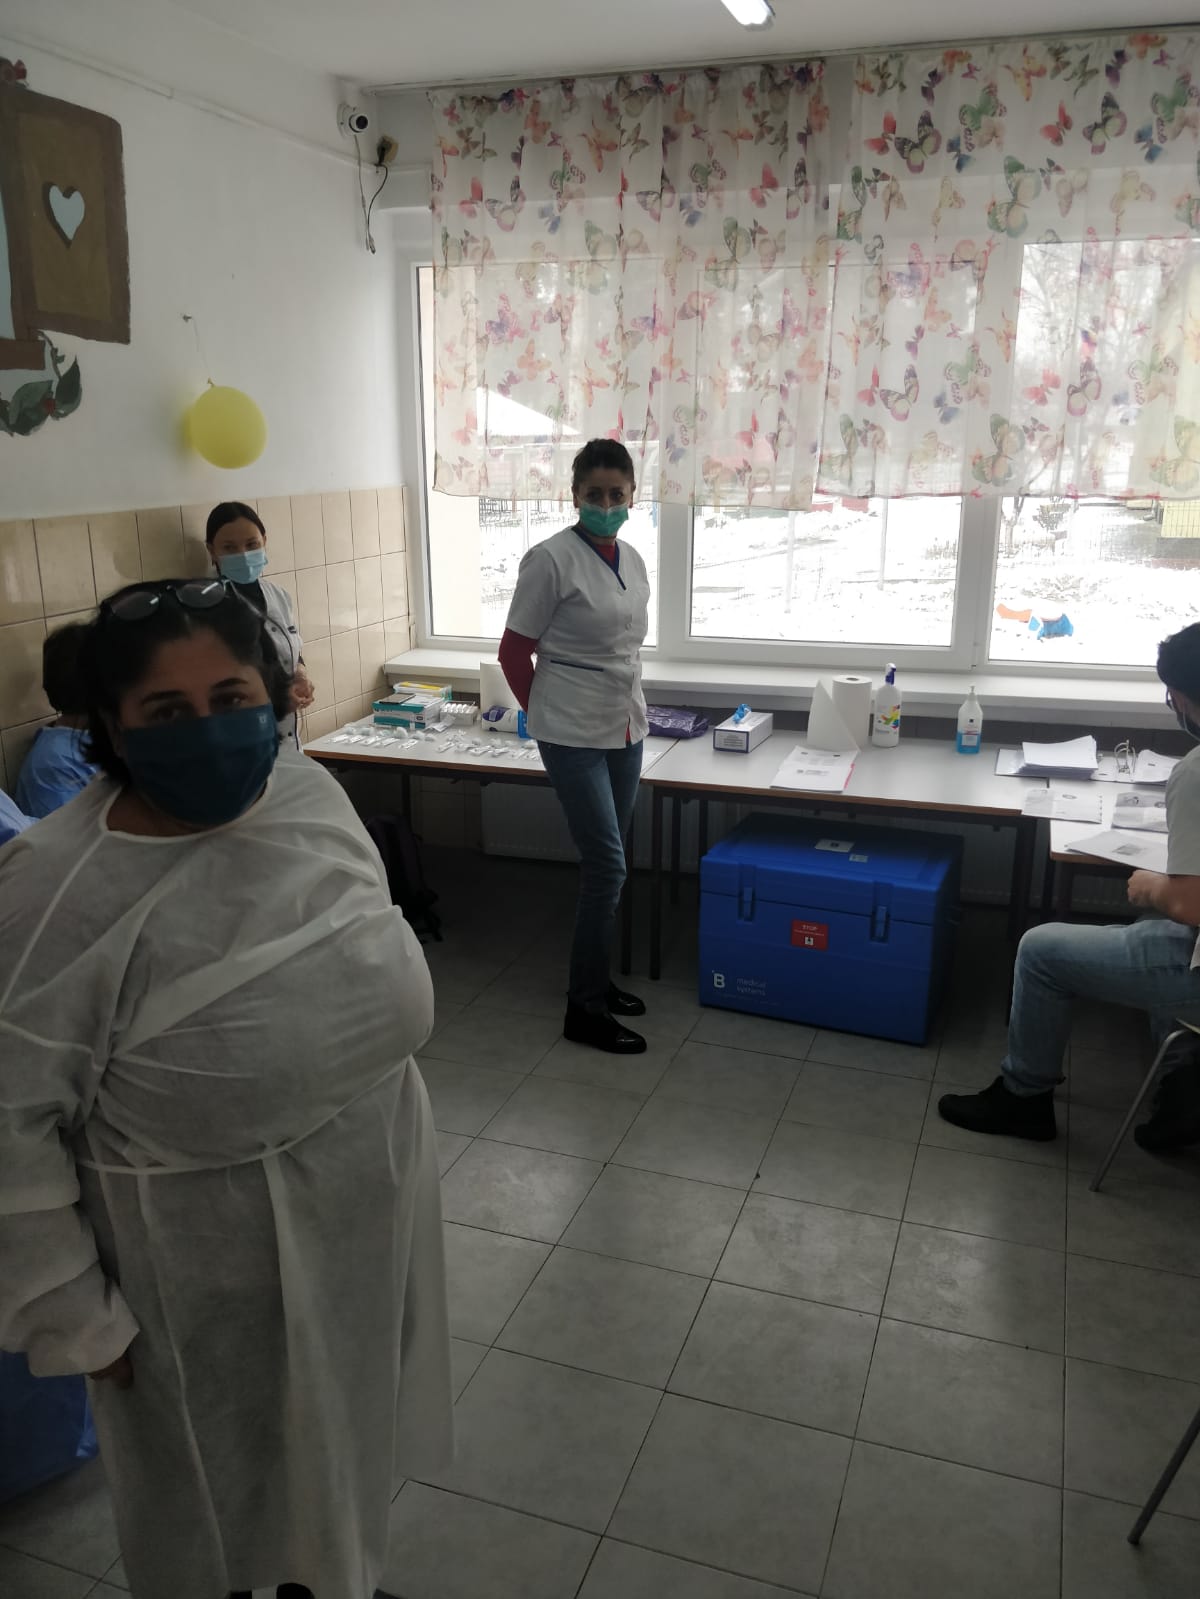 Medicii rezidenți ATI Timișoara oferă ajutor pentru vaccinarea persoanelor din centrele rezidențiale din județul Timiș